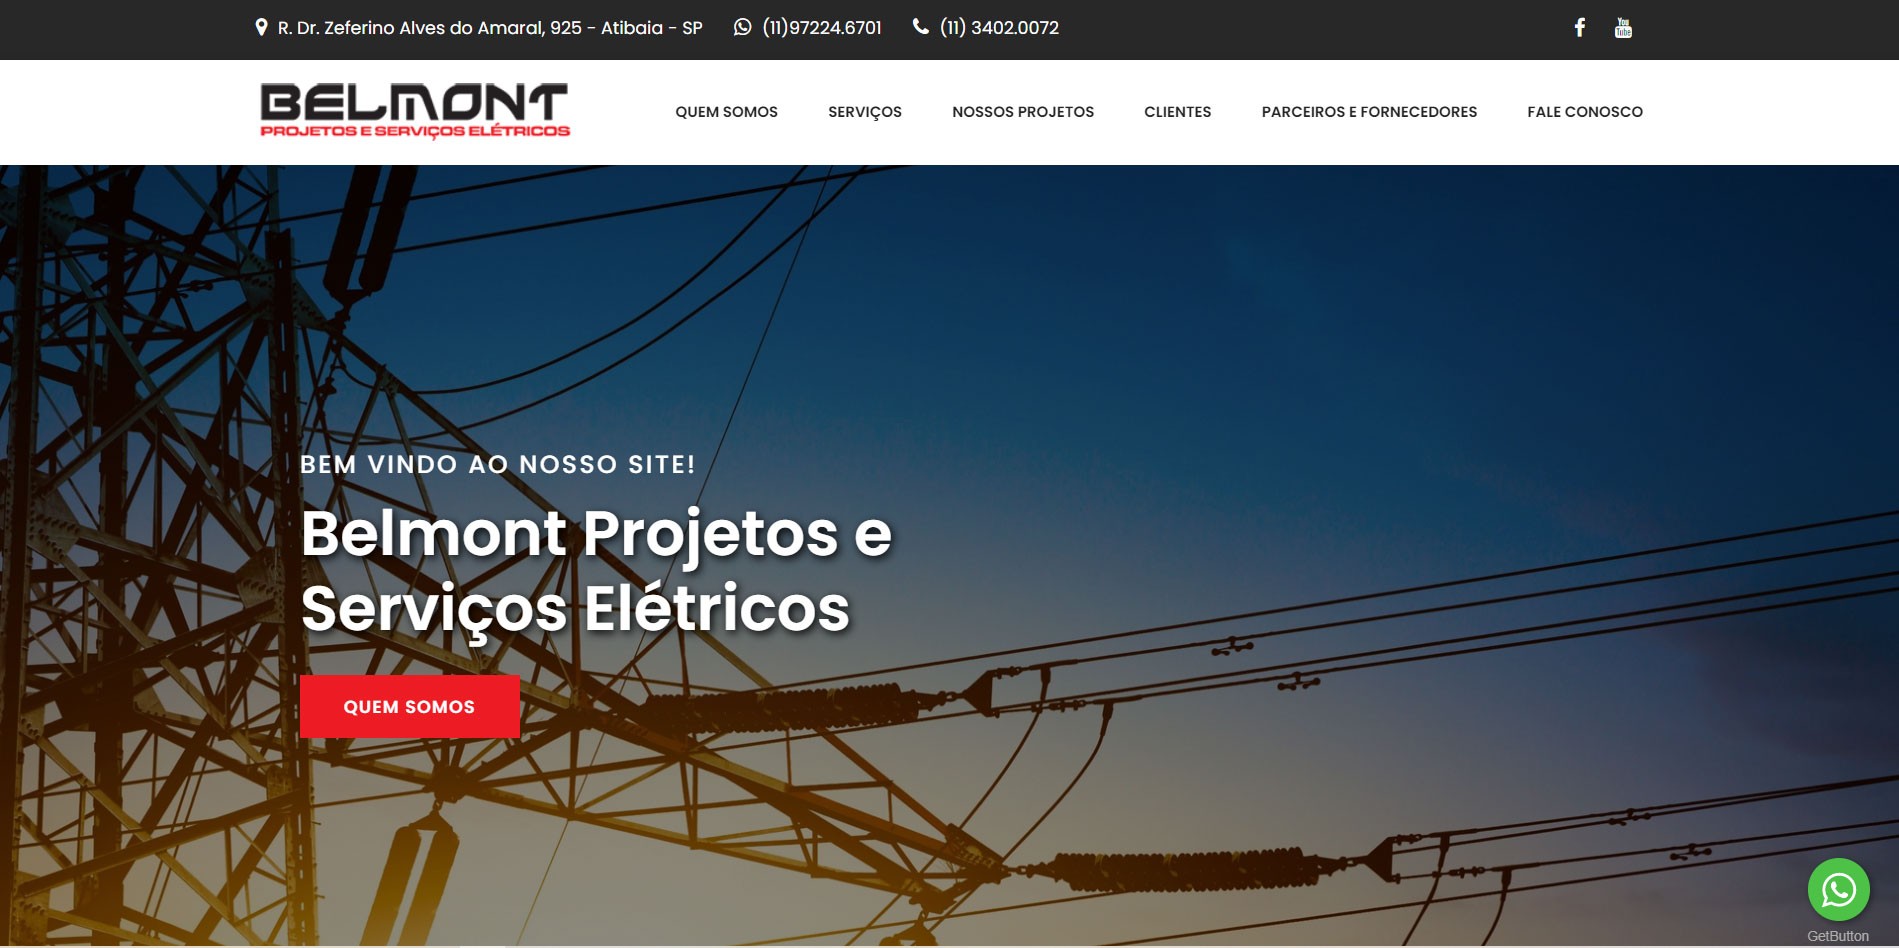  Novo Projeto Web no Ar! Belmont Projetos e Serviços Elétricos